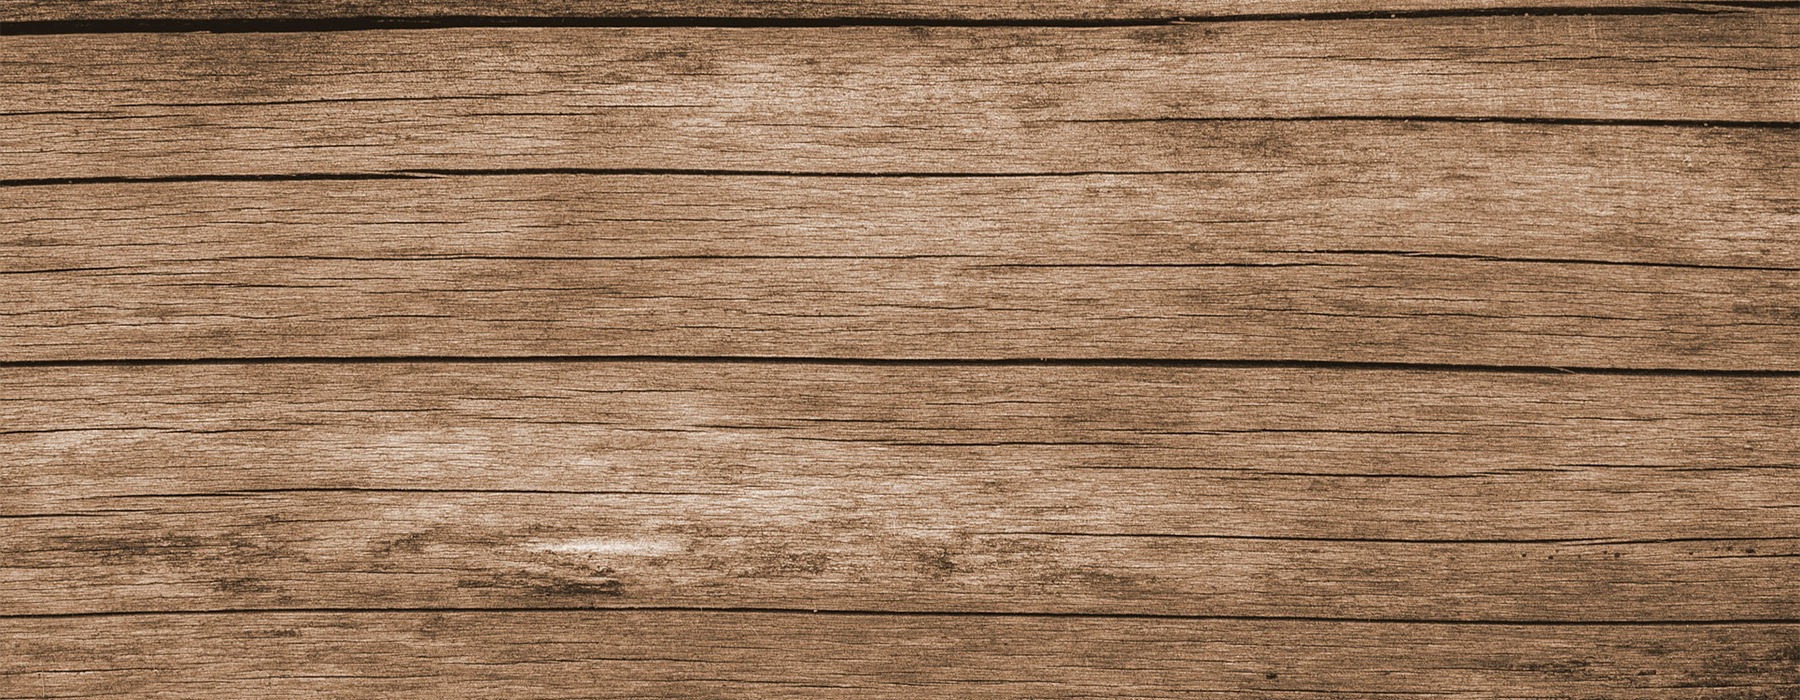 wood grain image